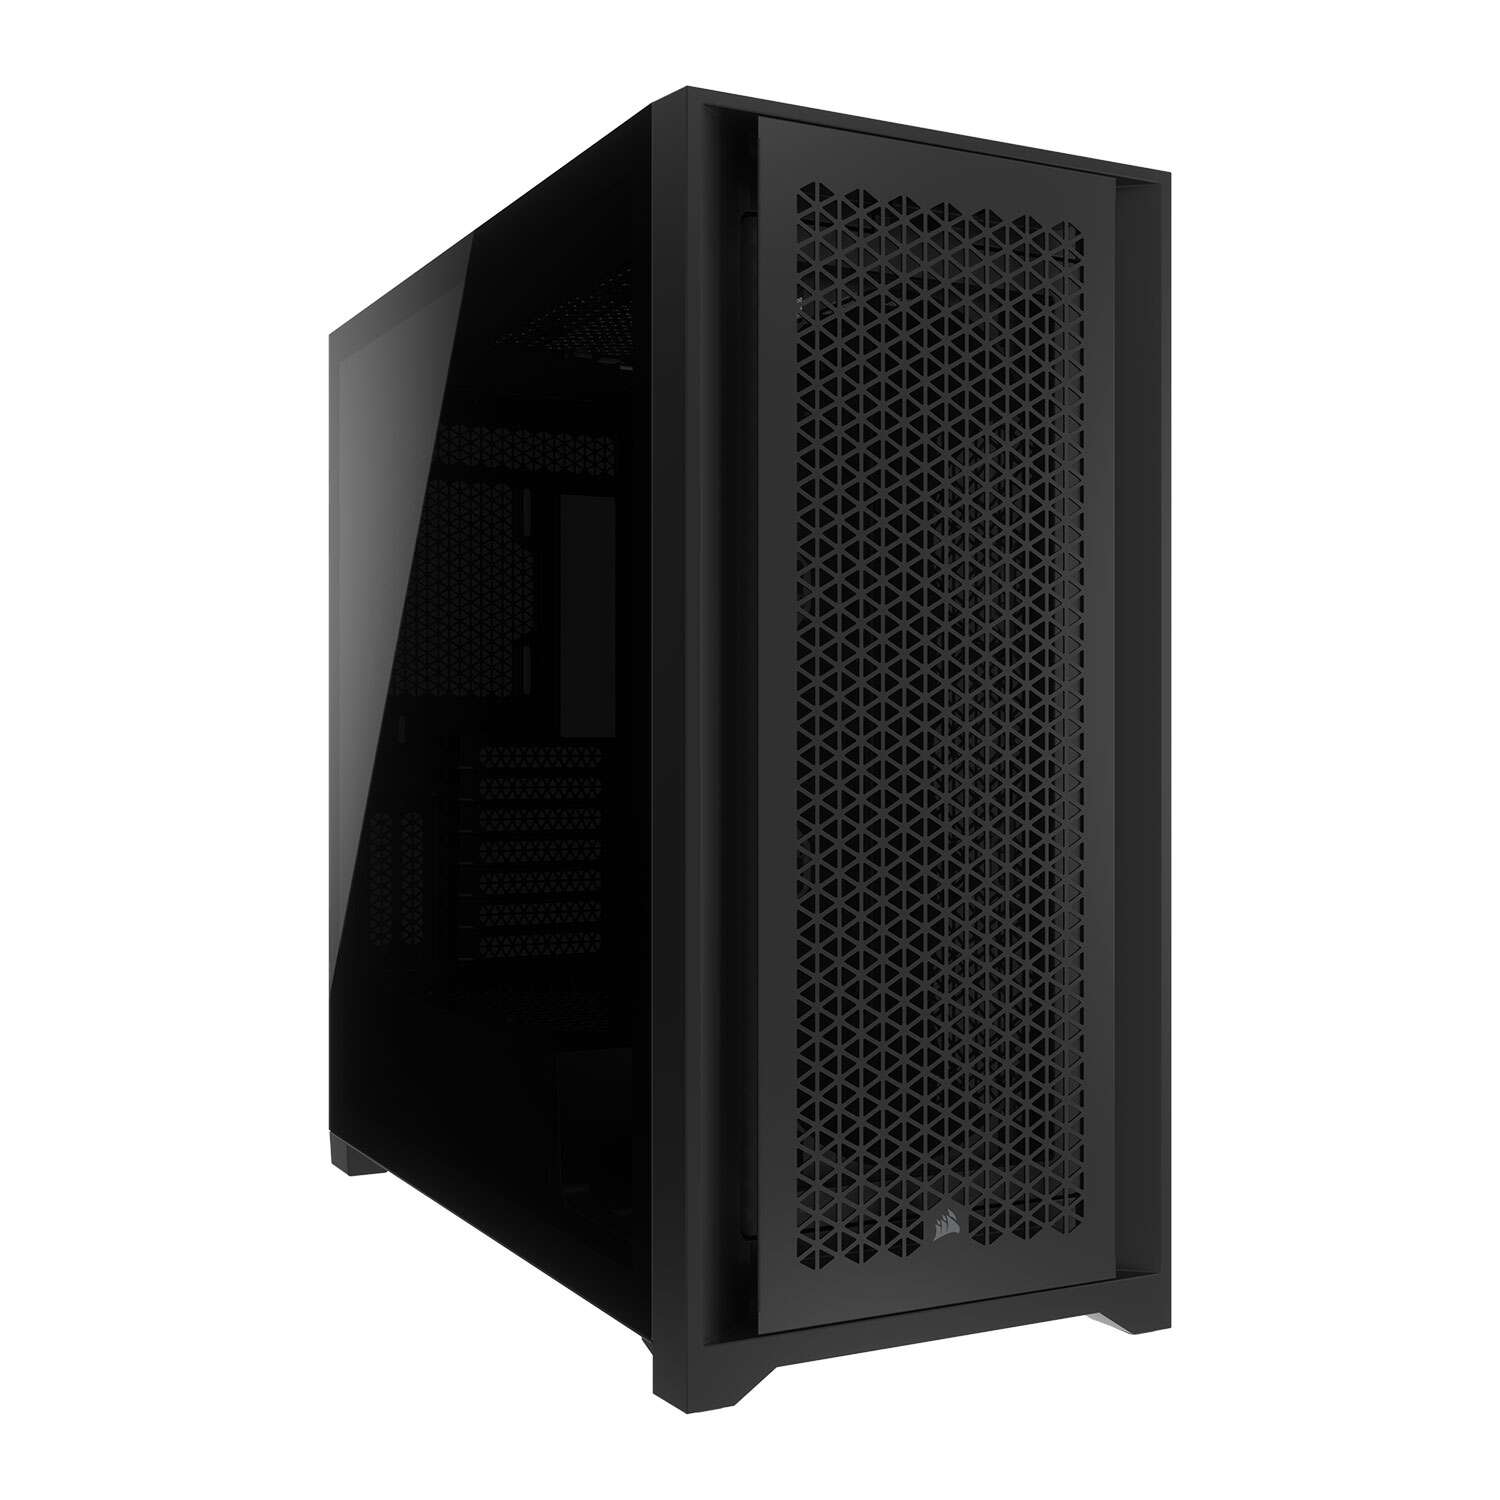 Corsair 5000d core airflow tempered glass számítógépház - fekete